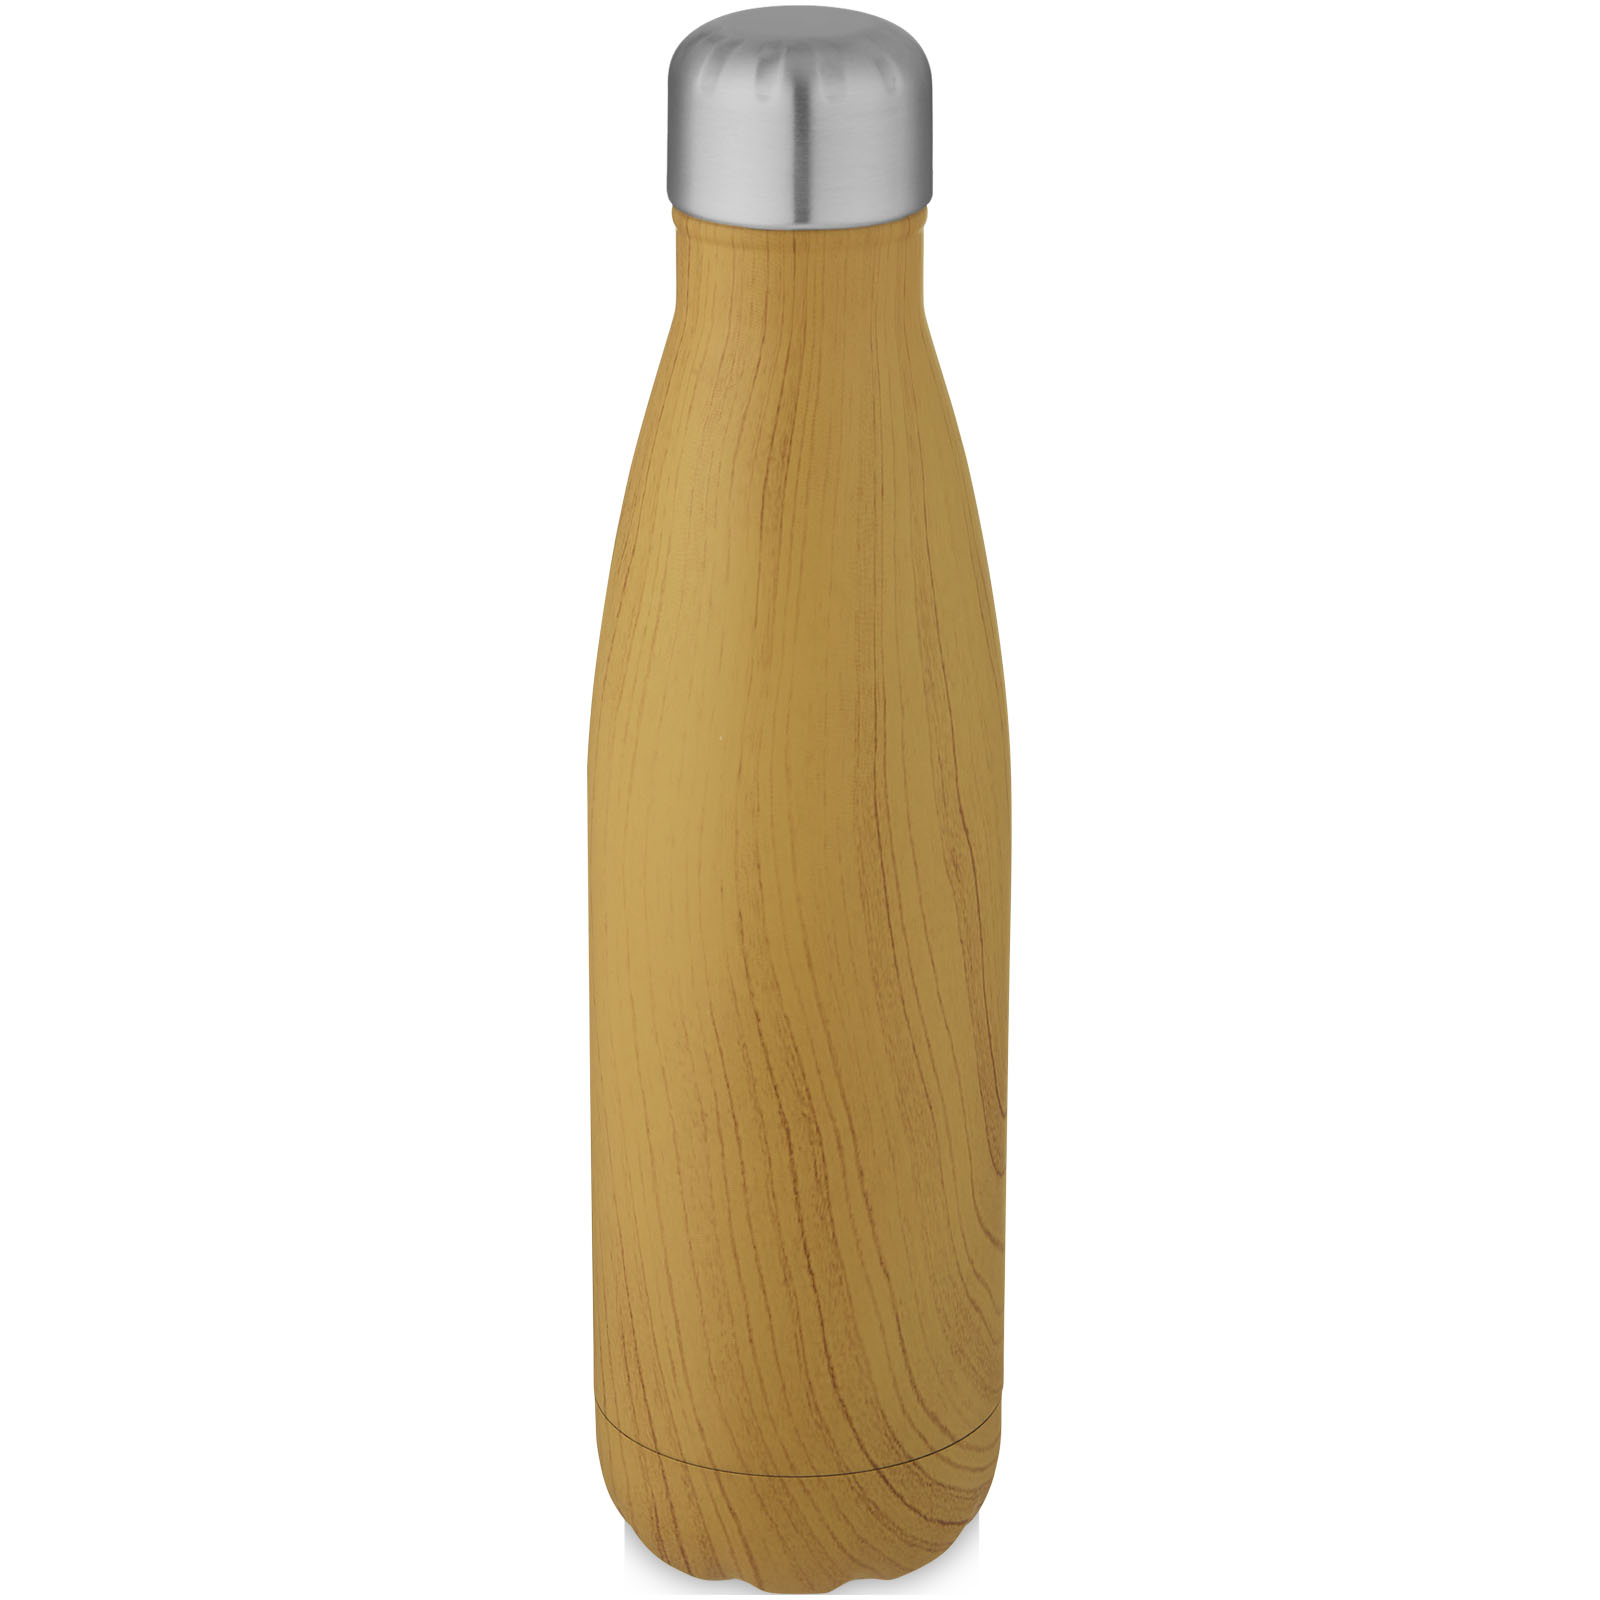 Kovová lahev s vakuovou izolací TENAN s natištěným dřevěným vzorem, 500 ml